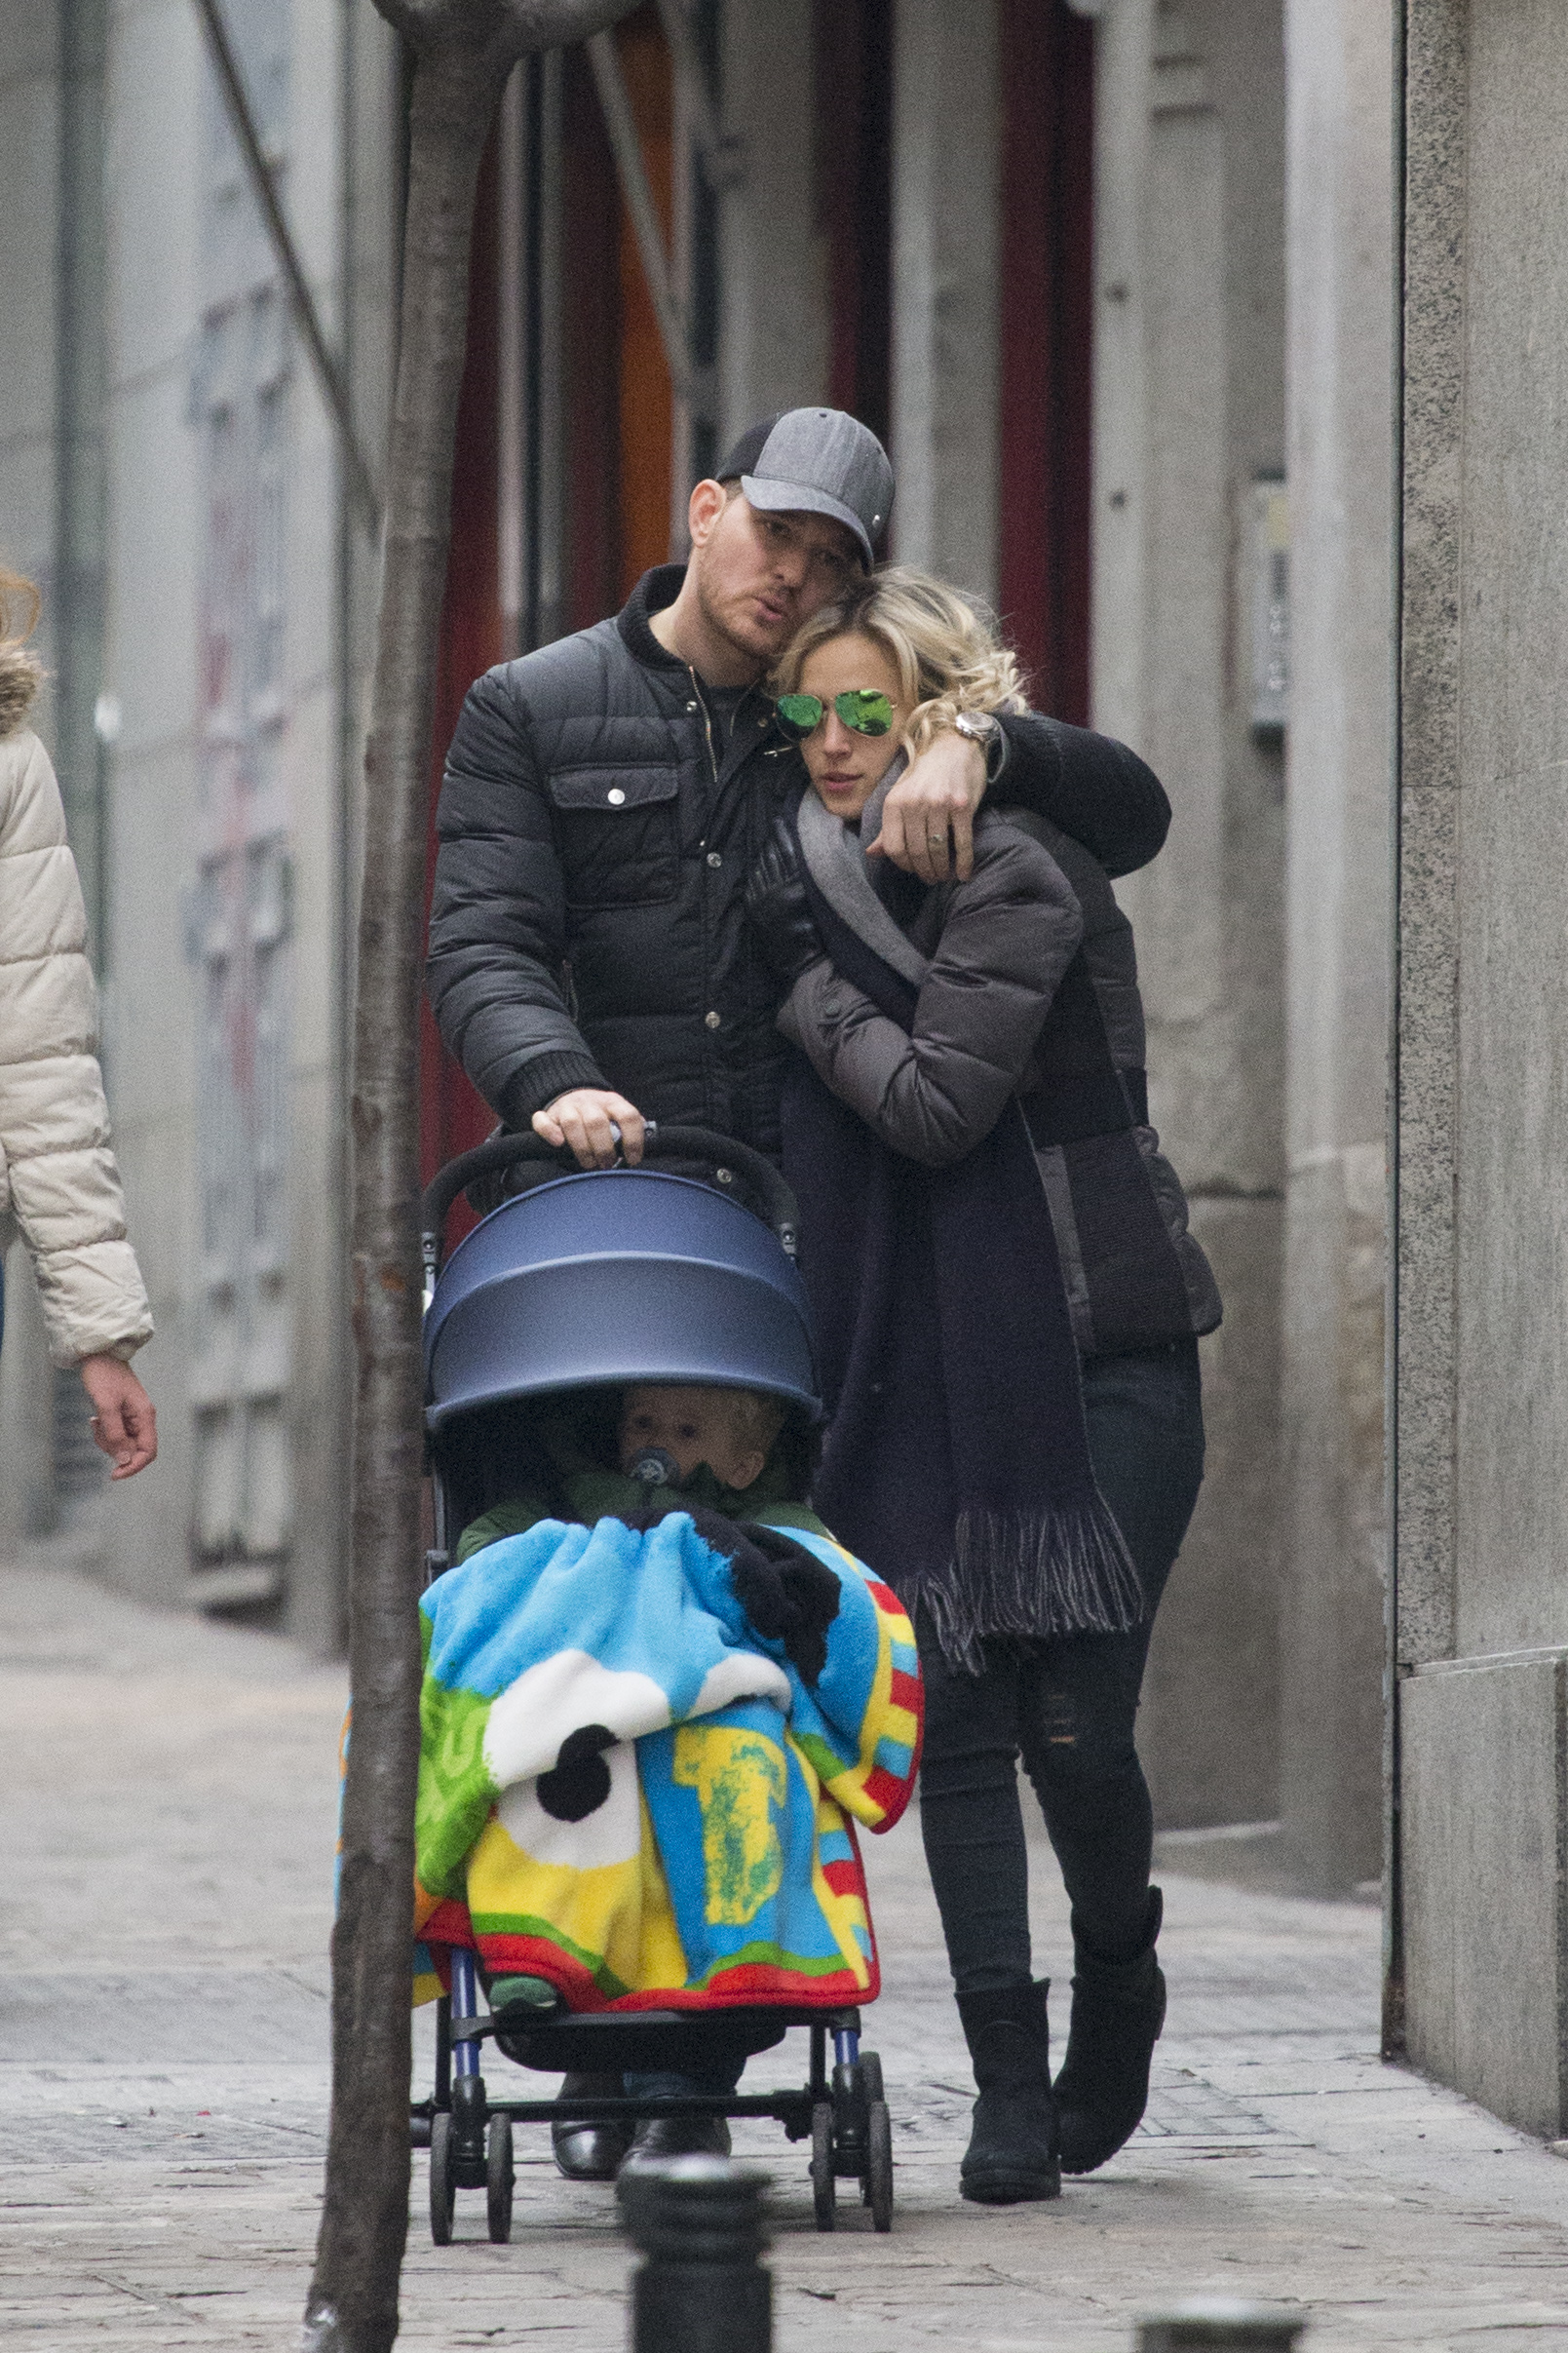 La pareja y su hijo vistos en Madrid, España, el 12 de febrero de 2015 | Fuente: Getty Images